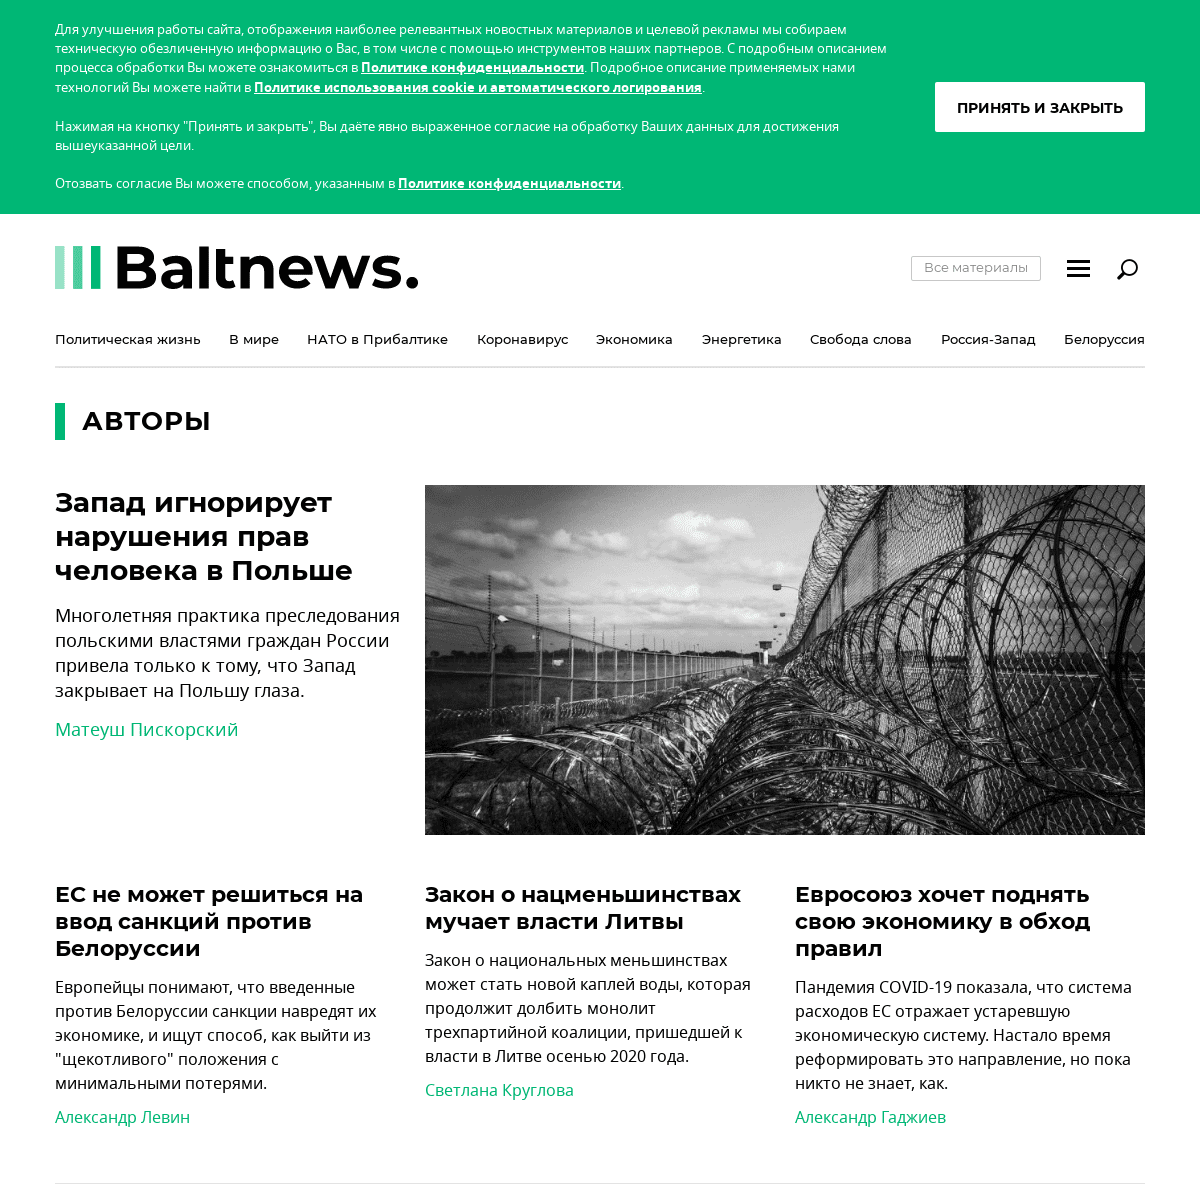 A complete backup of https://baltnews.lt